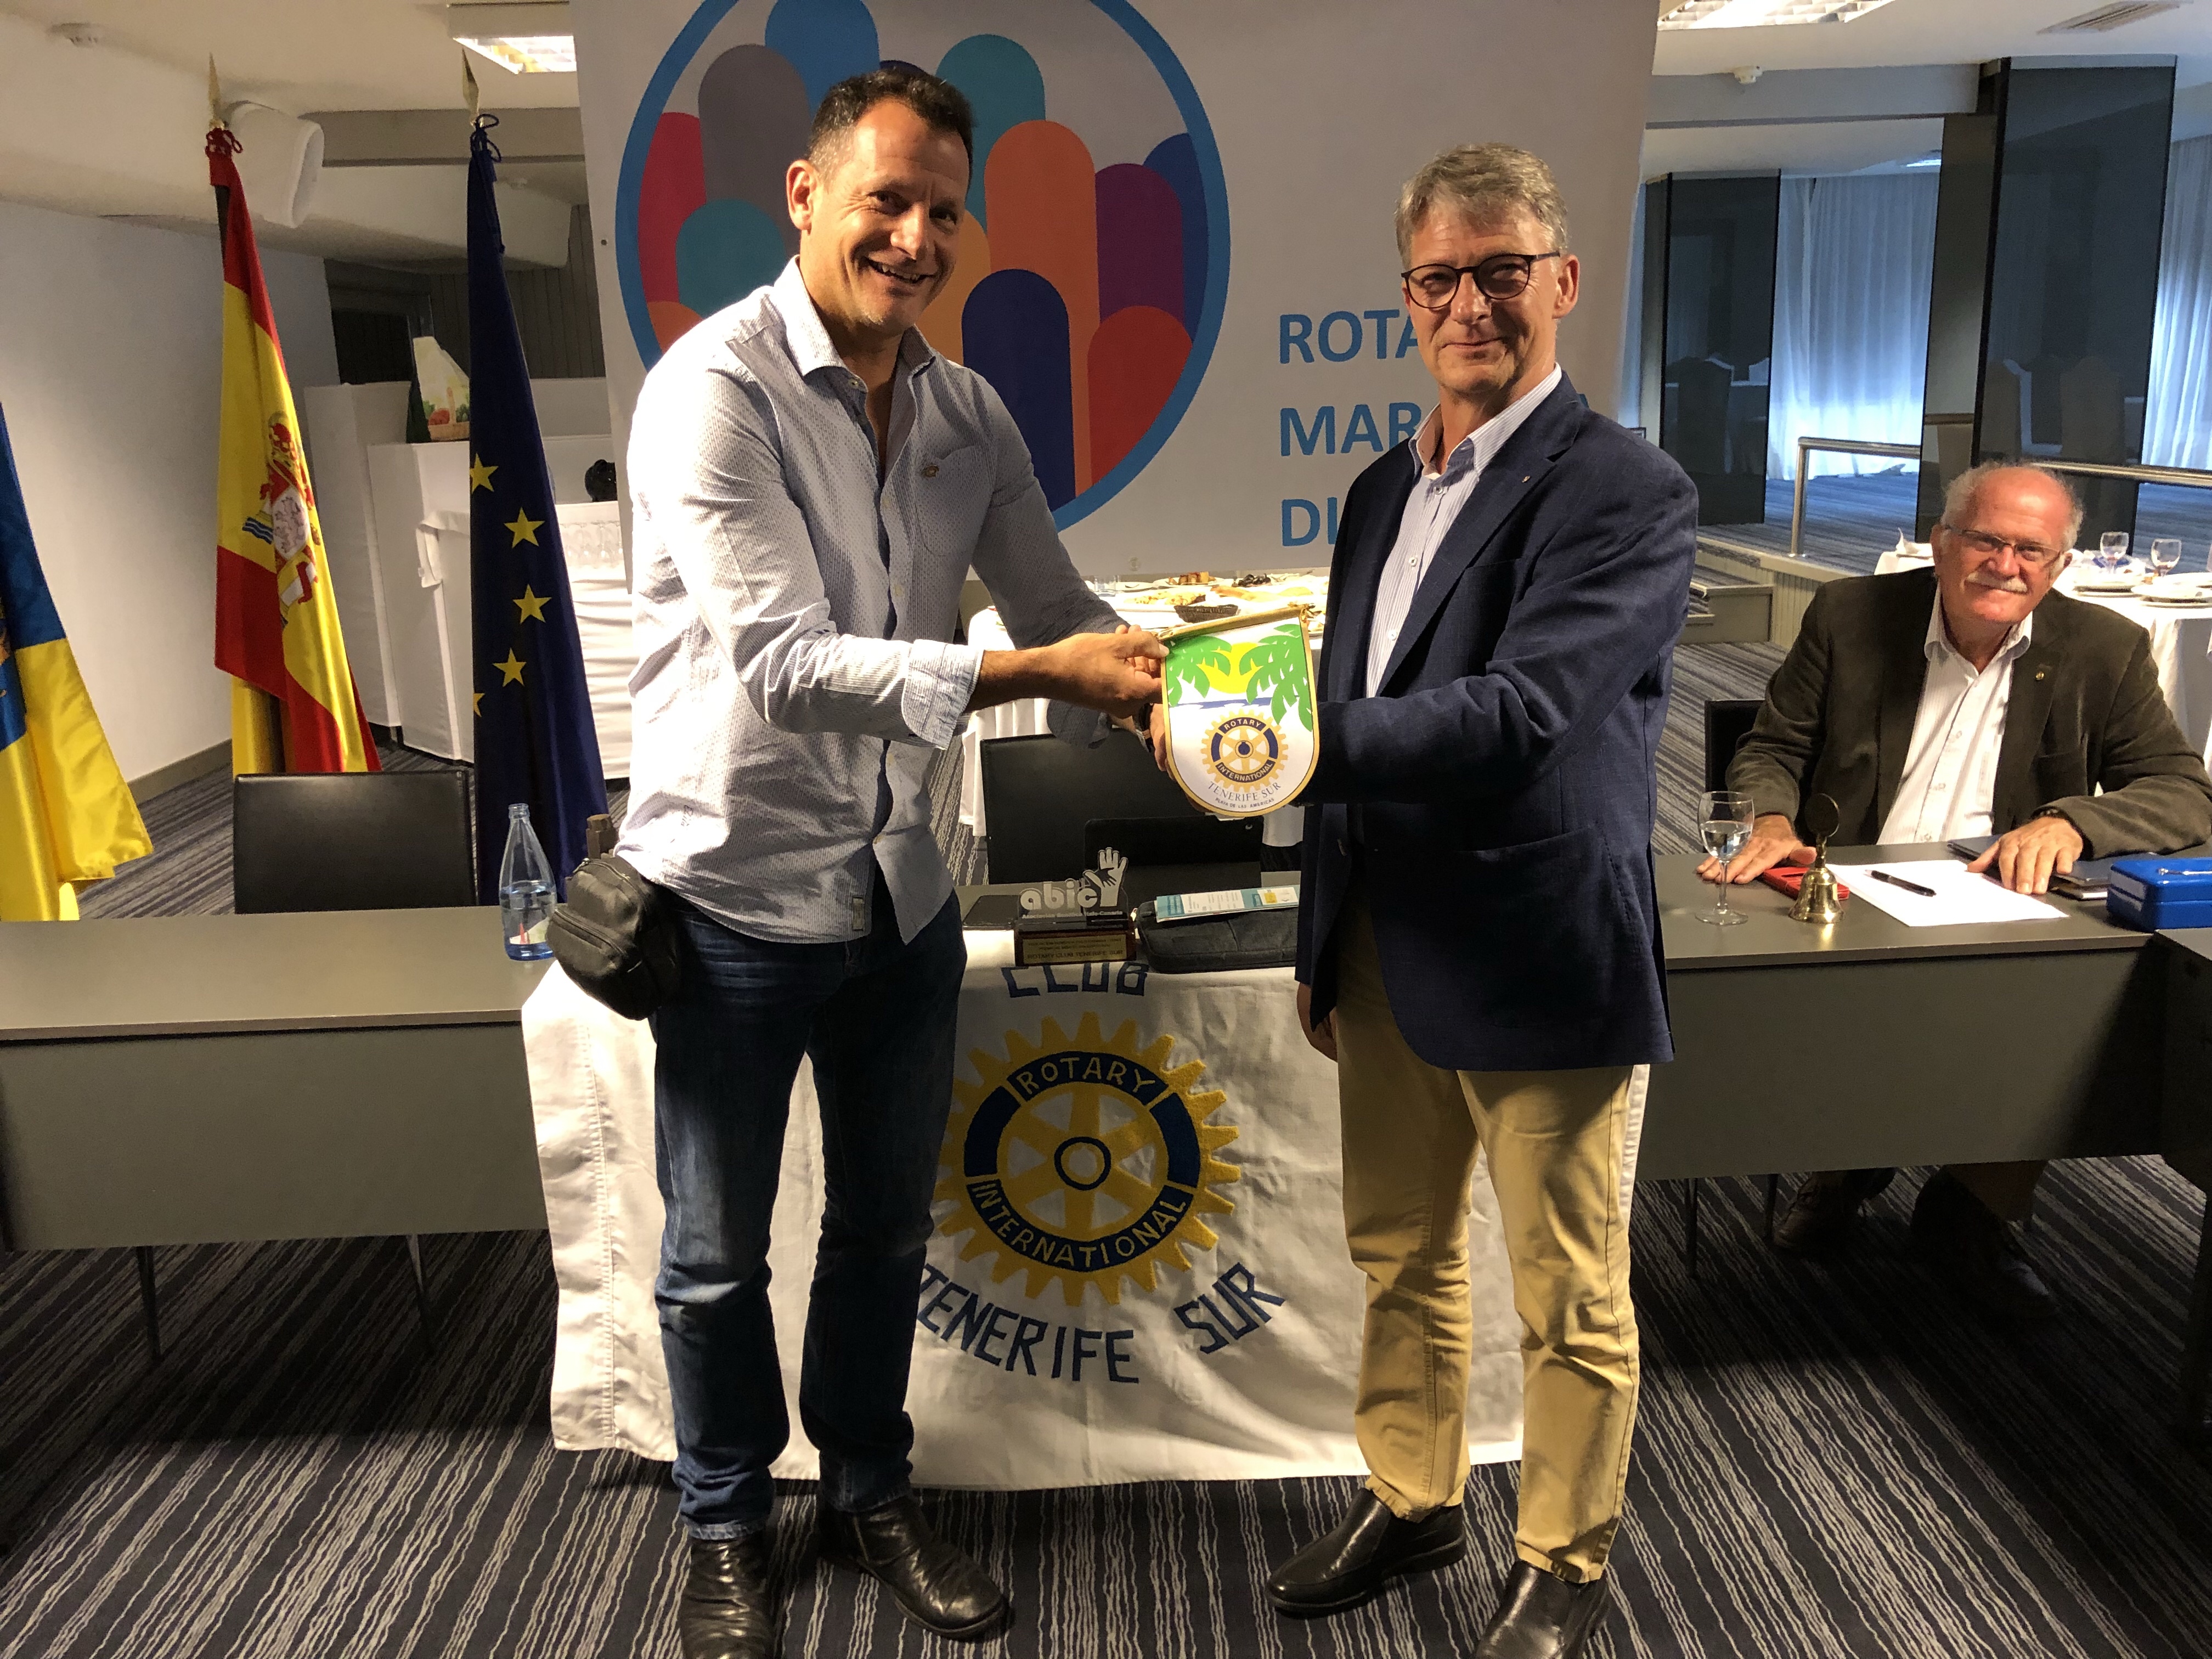 Visita del compañero Ulrich Buehler del Rotary Club Rhoen de Alemania